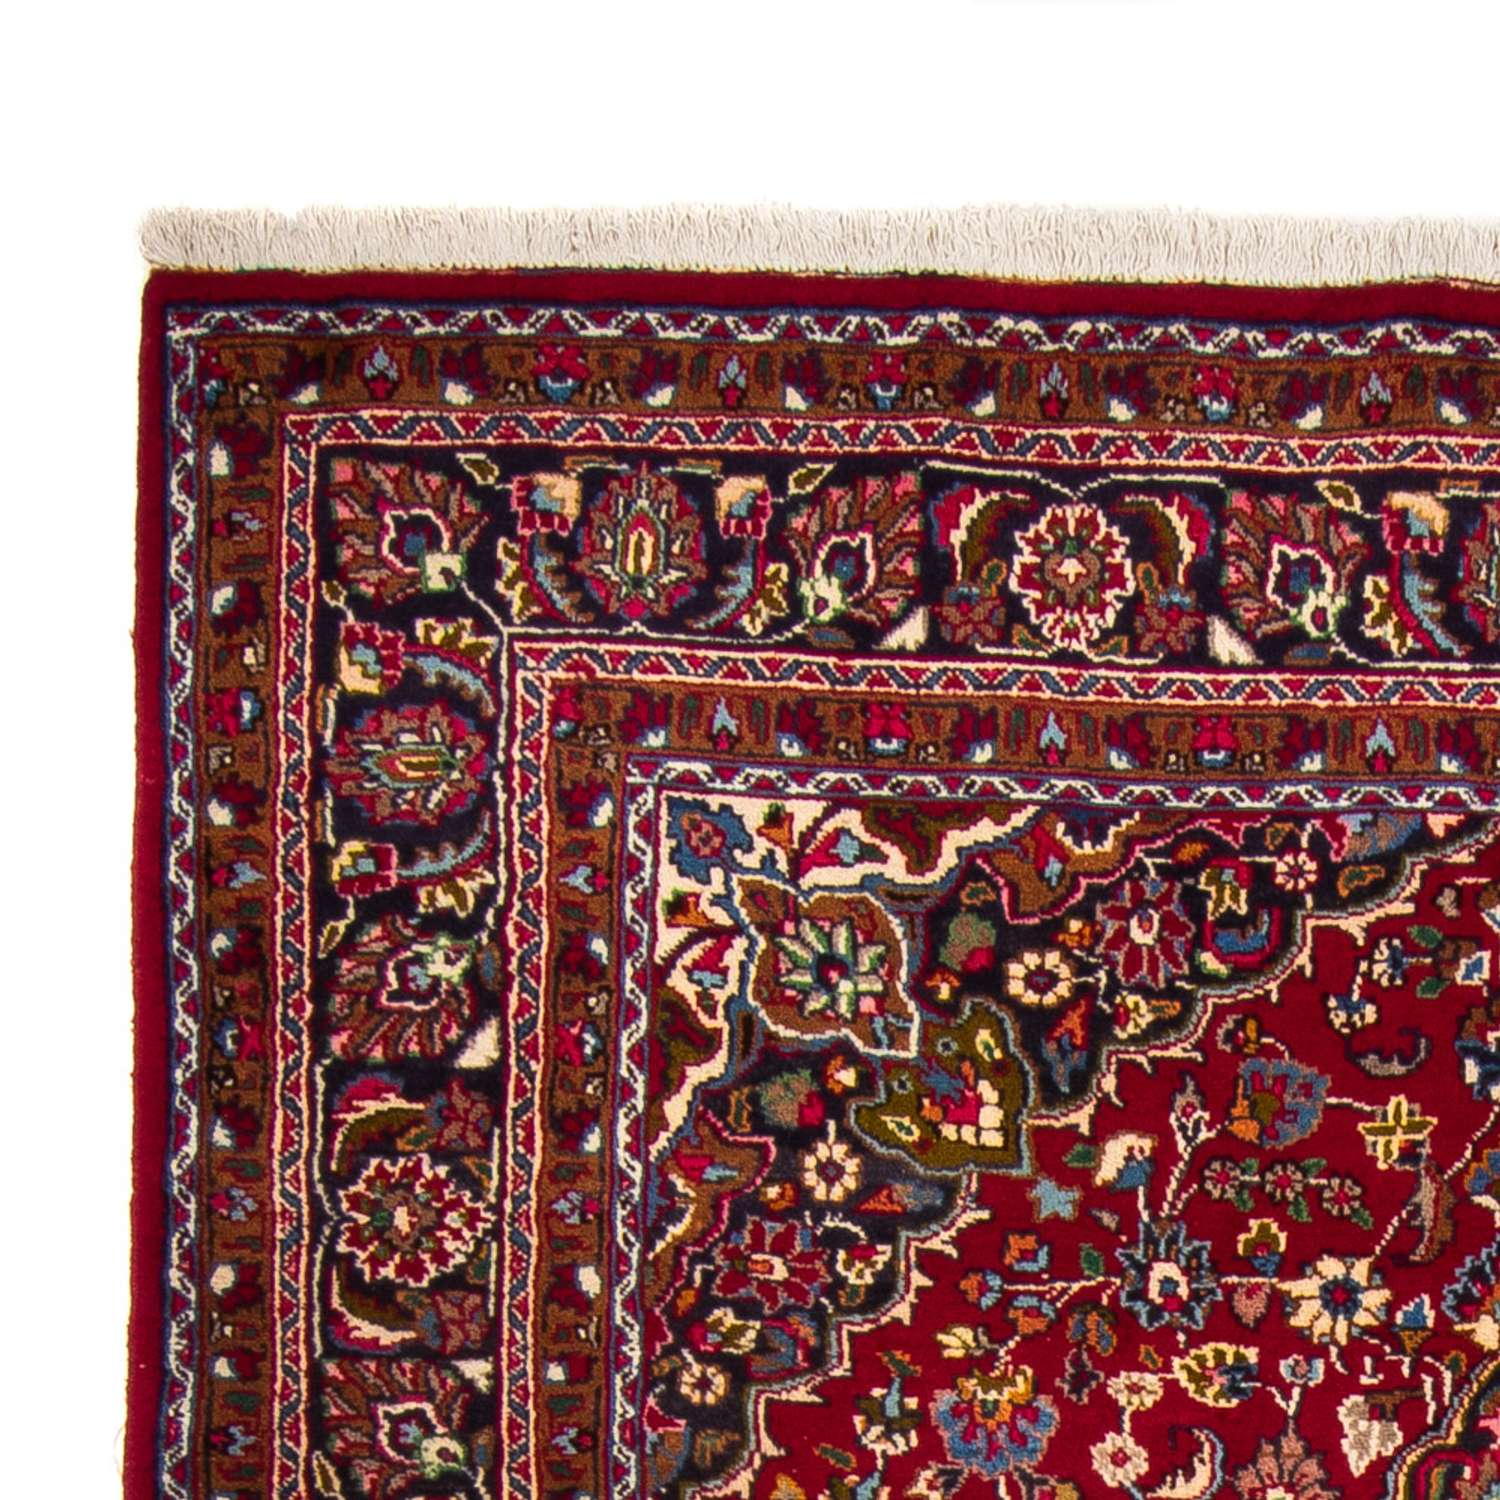 Tapis persan - Classique - Royal - 290 x 203 cm - rouge